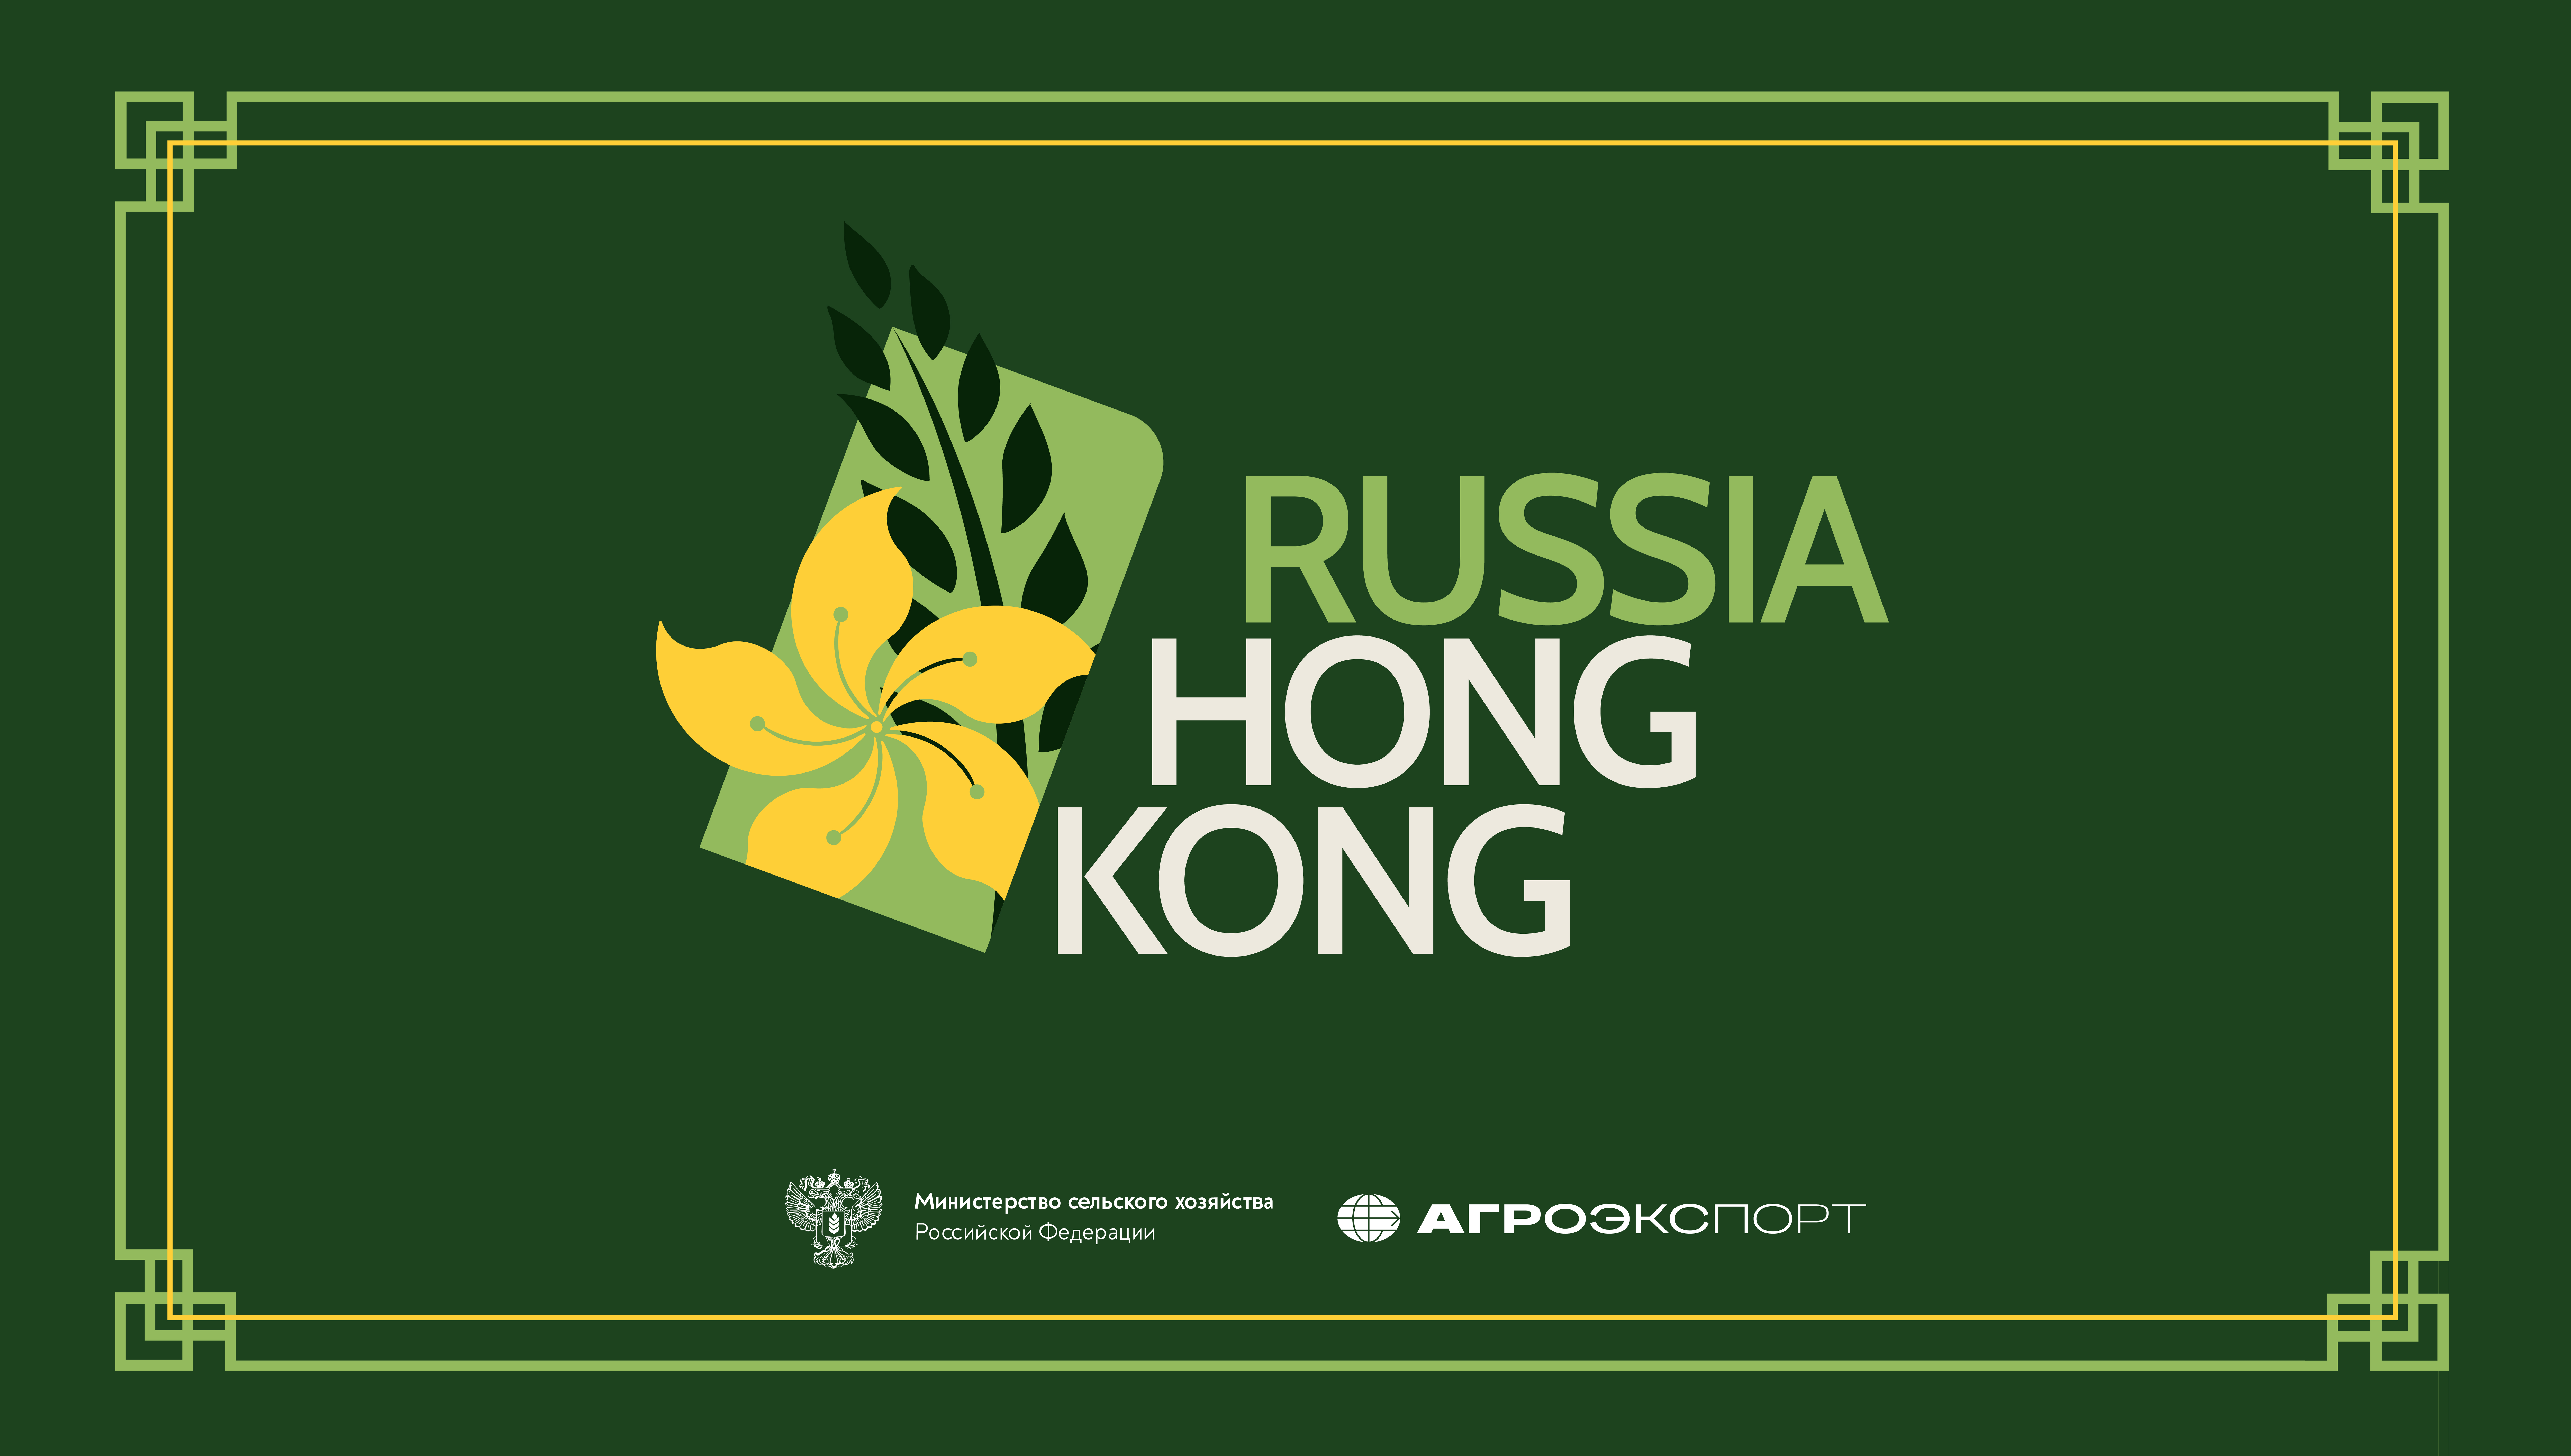 Деловая миссия российских компаний-экспортеров продукции АПК в Гонконг